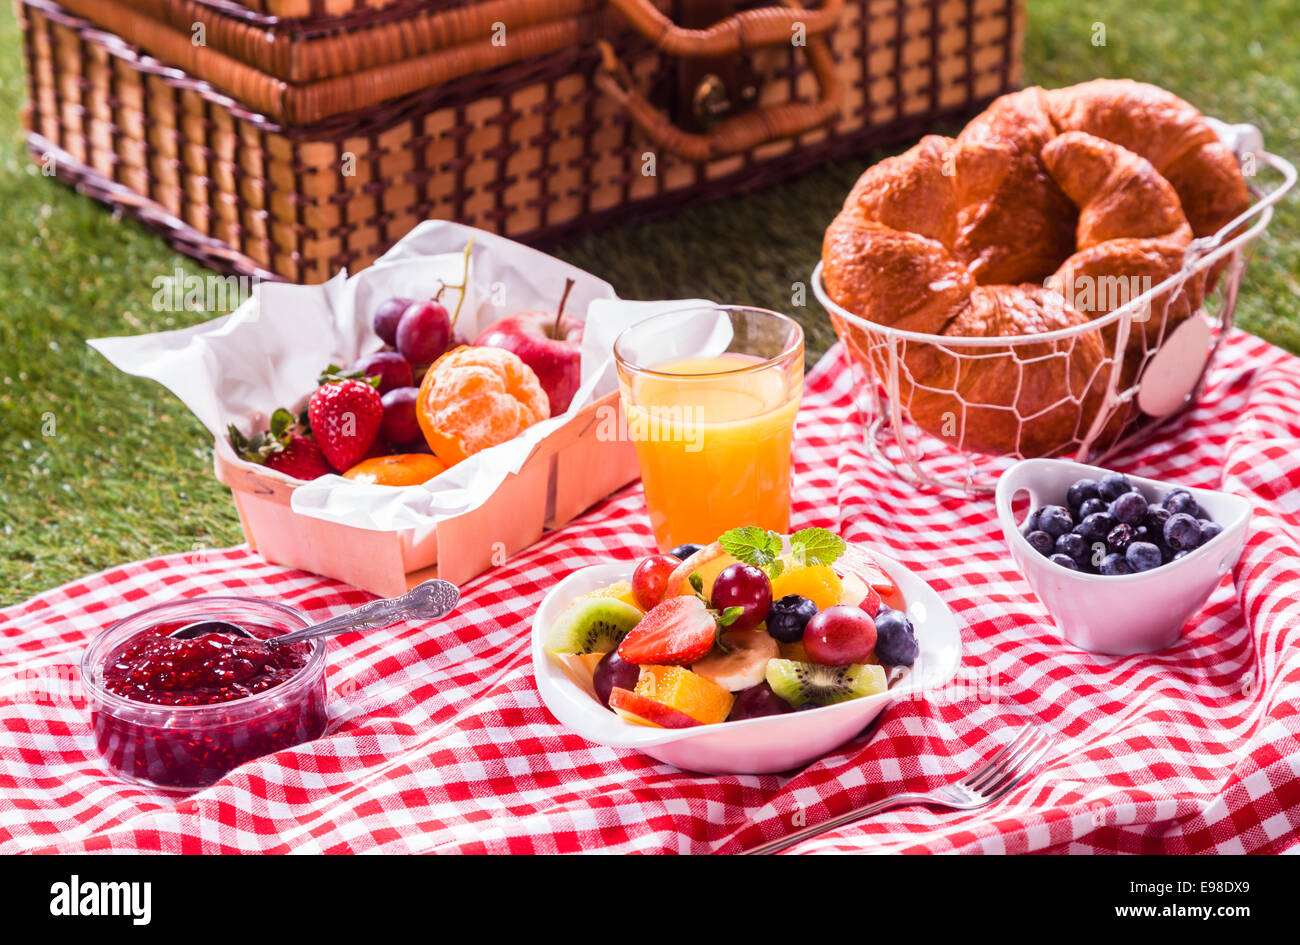 Gesunde vegetarische oder vegane Picknick mit einer köstlichen Auswahl an frisches Obst, goldene Croissants, Obstkonfitüre und tropischen Obstsalat auf eine rot-weiße Tischdecke neben einem Picknickkorb auf dem grünen Rasen Stockfoto